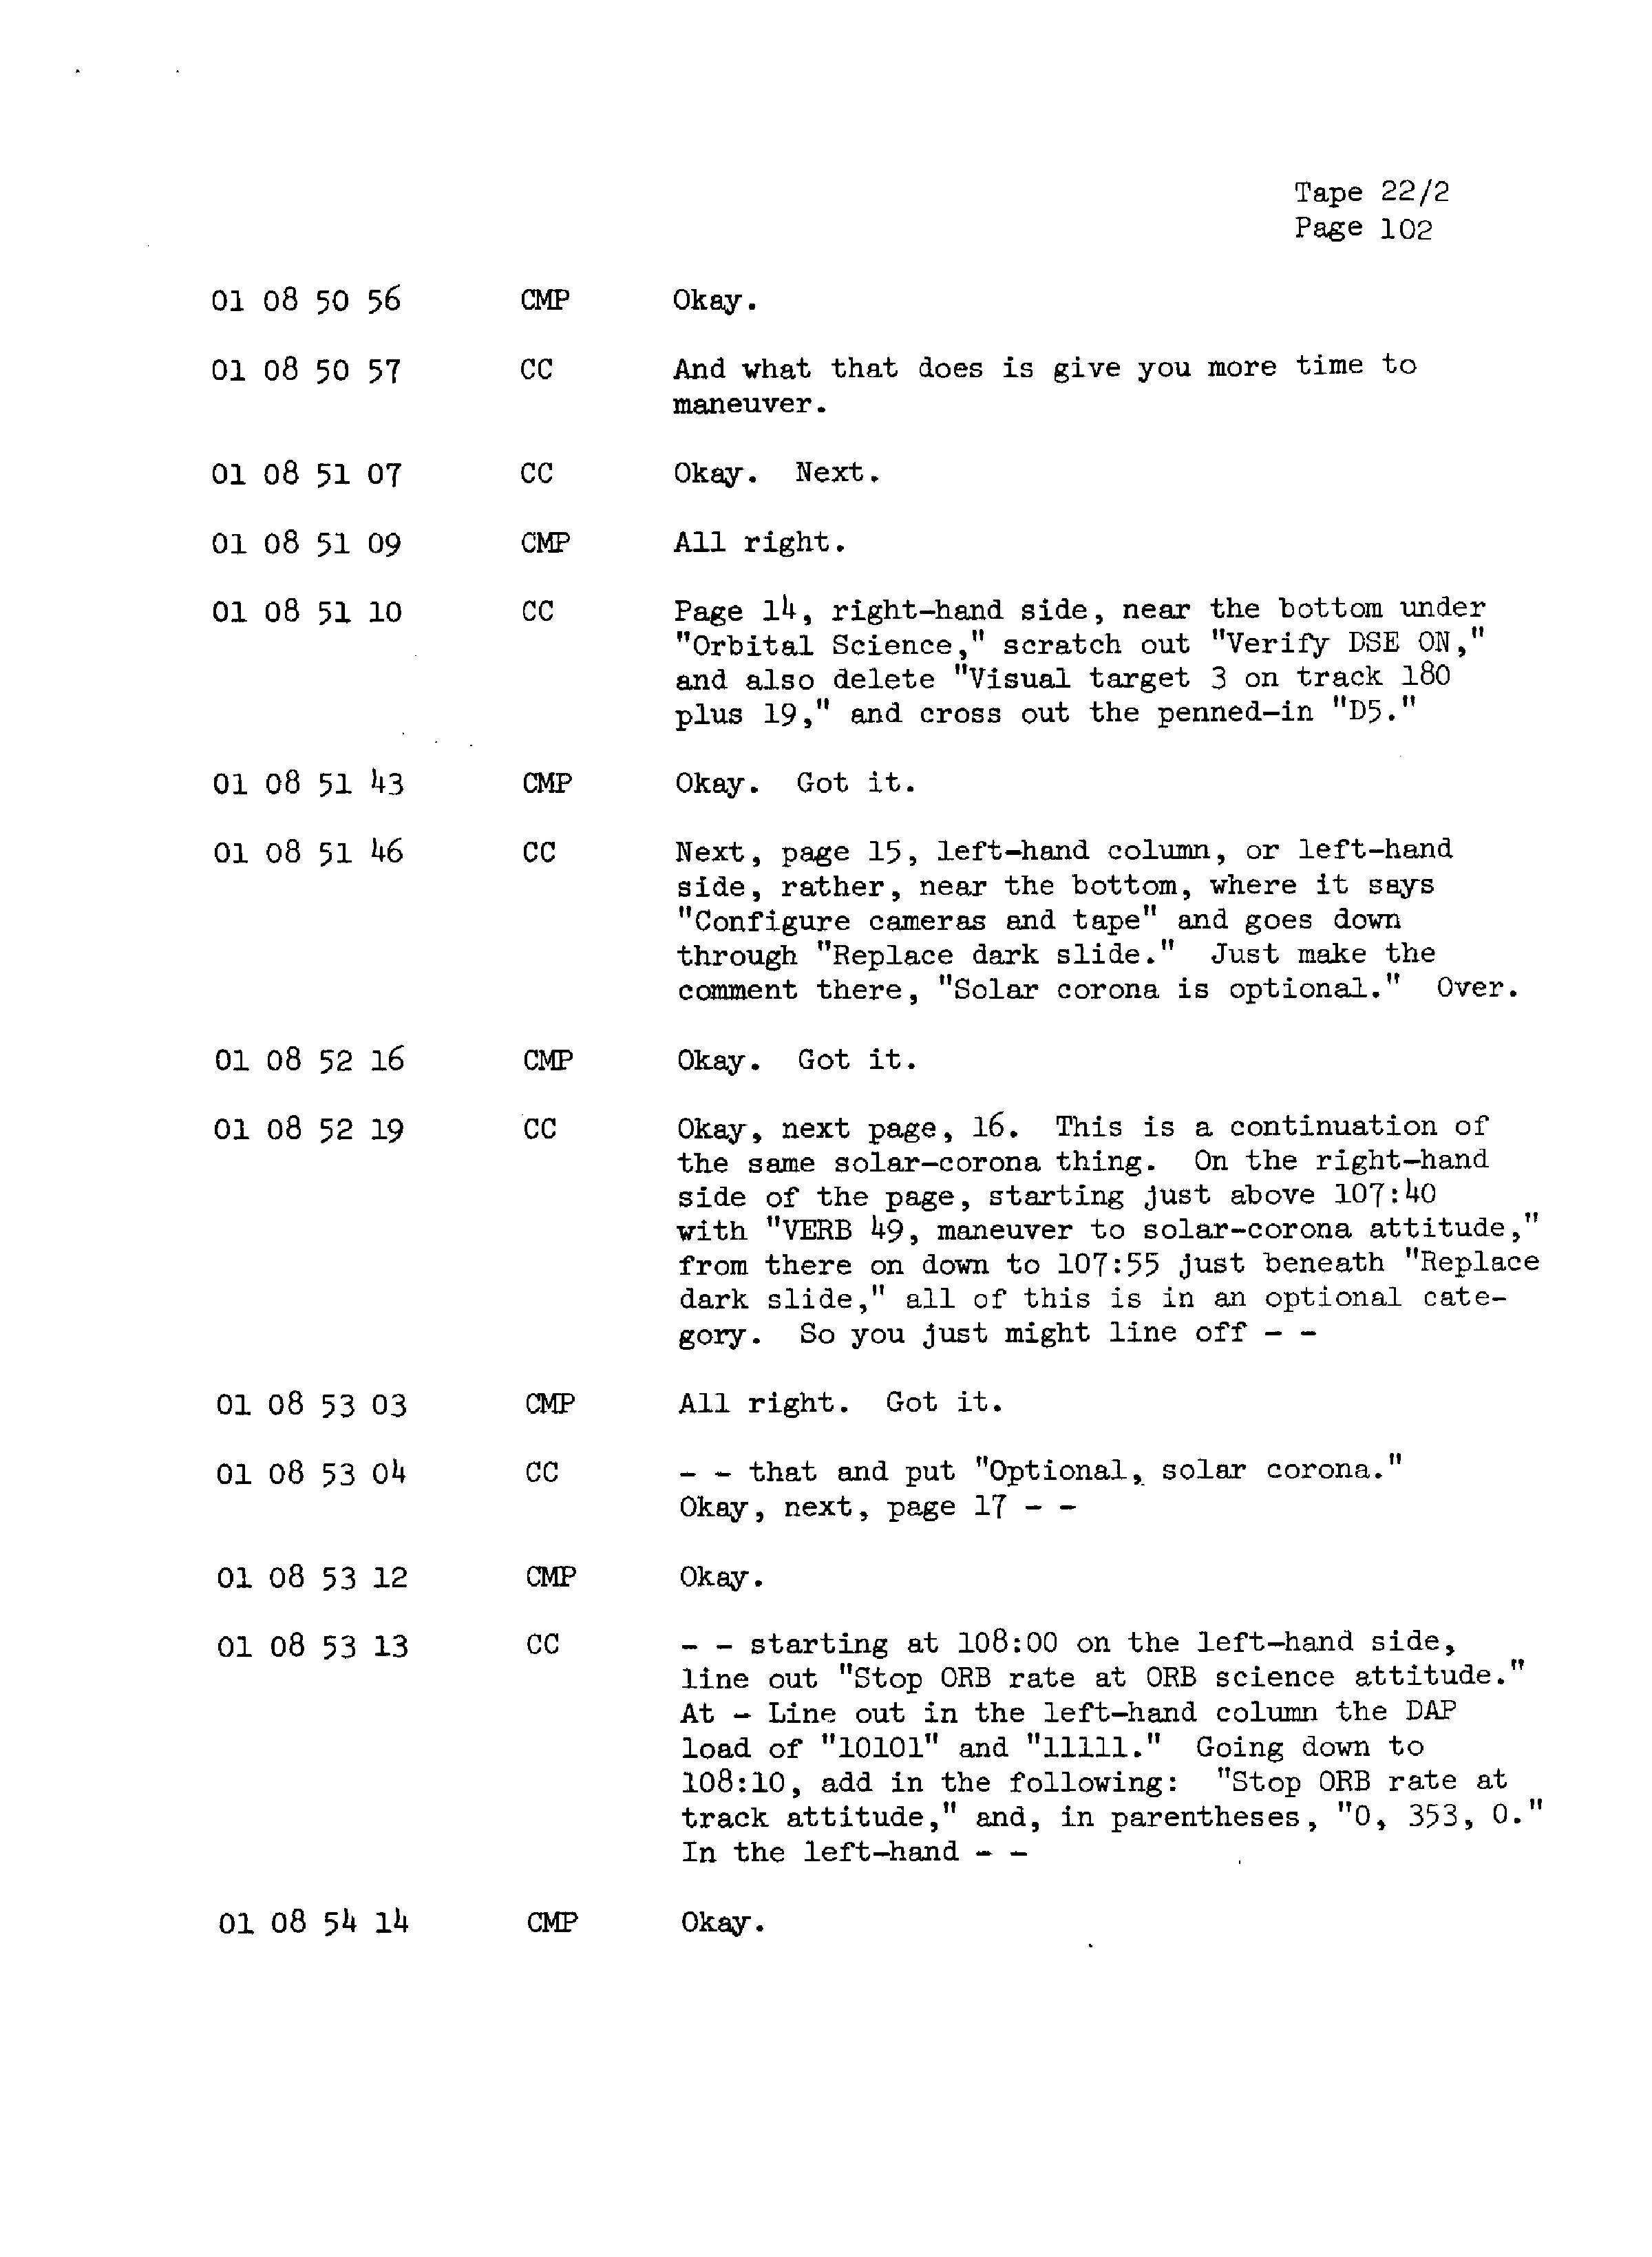 Page 109 of Apollo 13’s original transcript